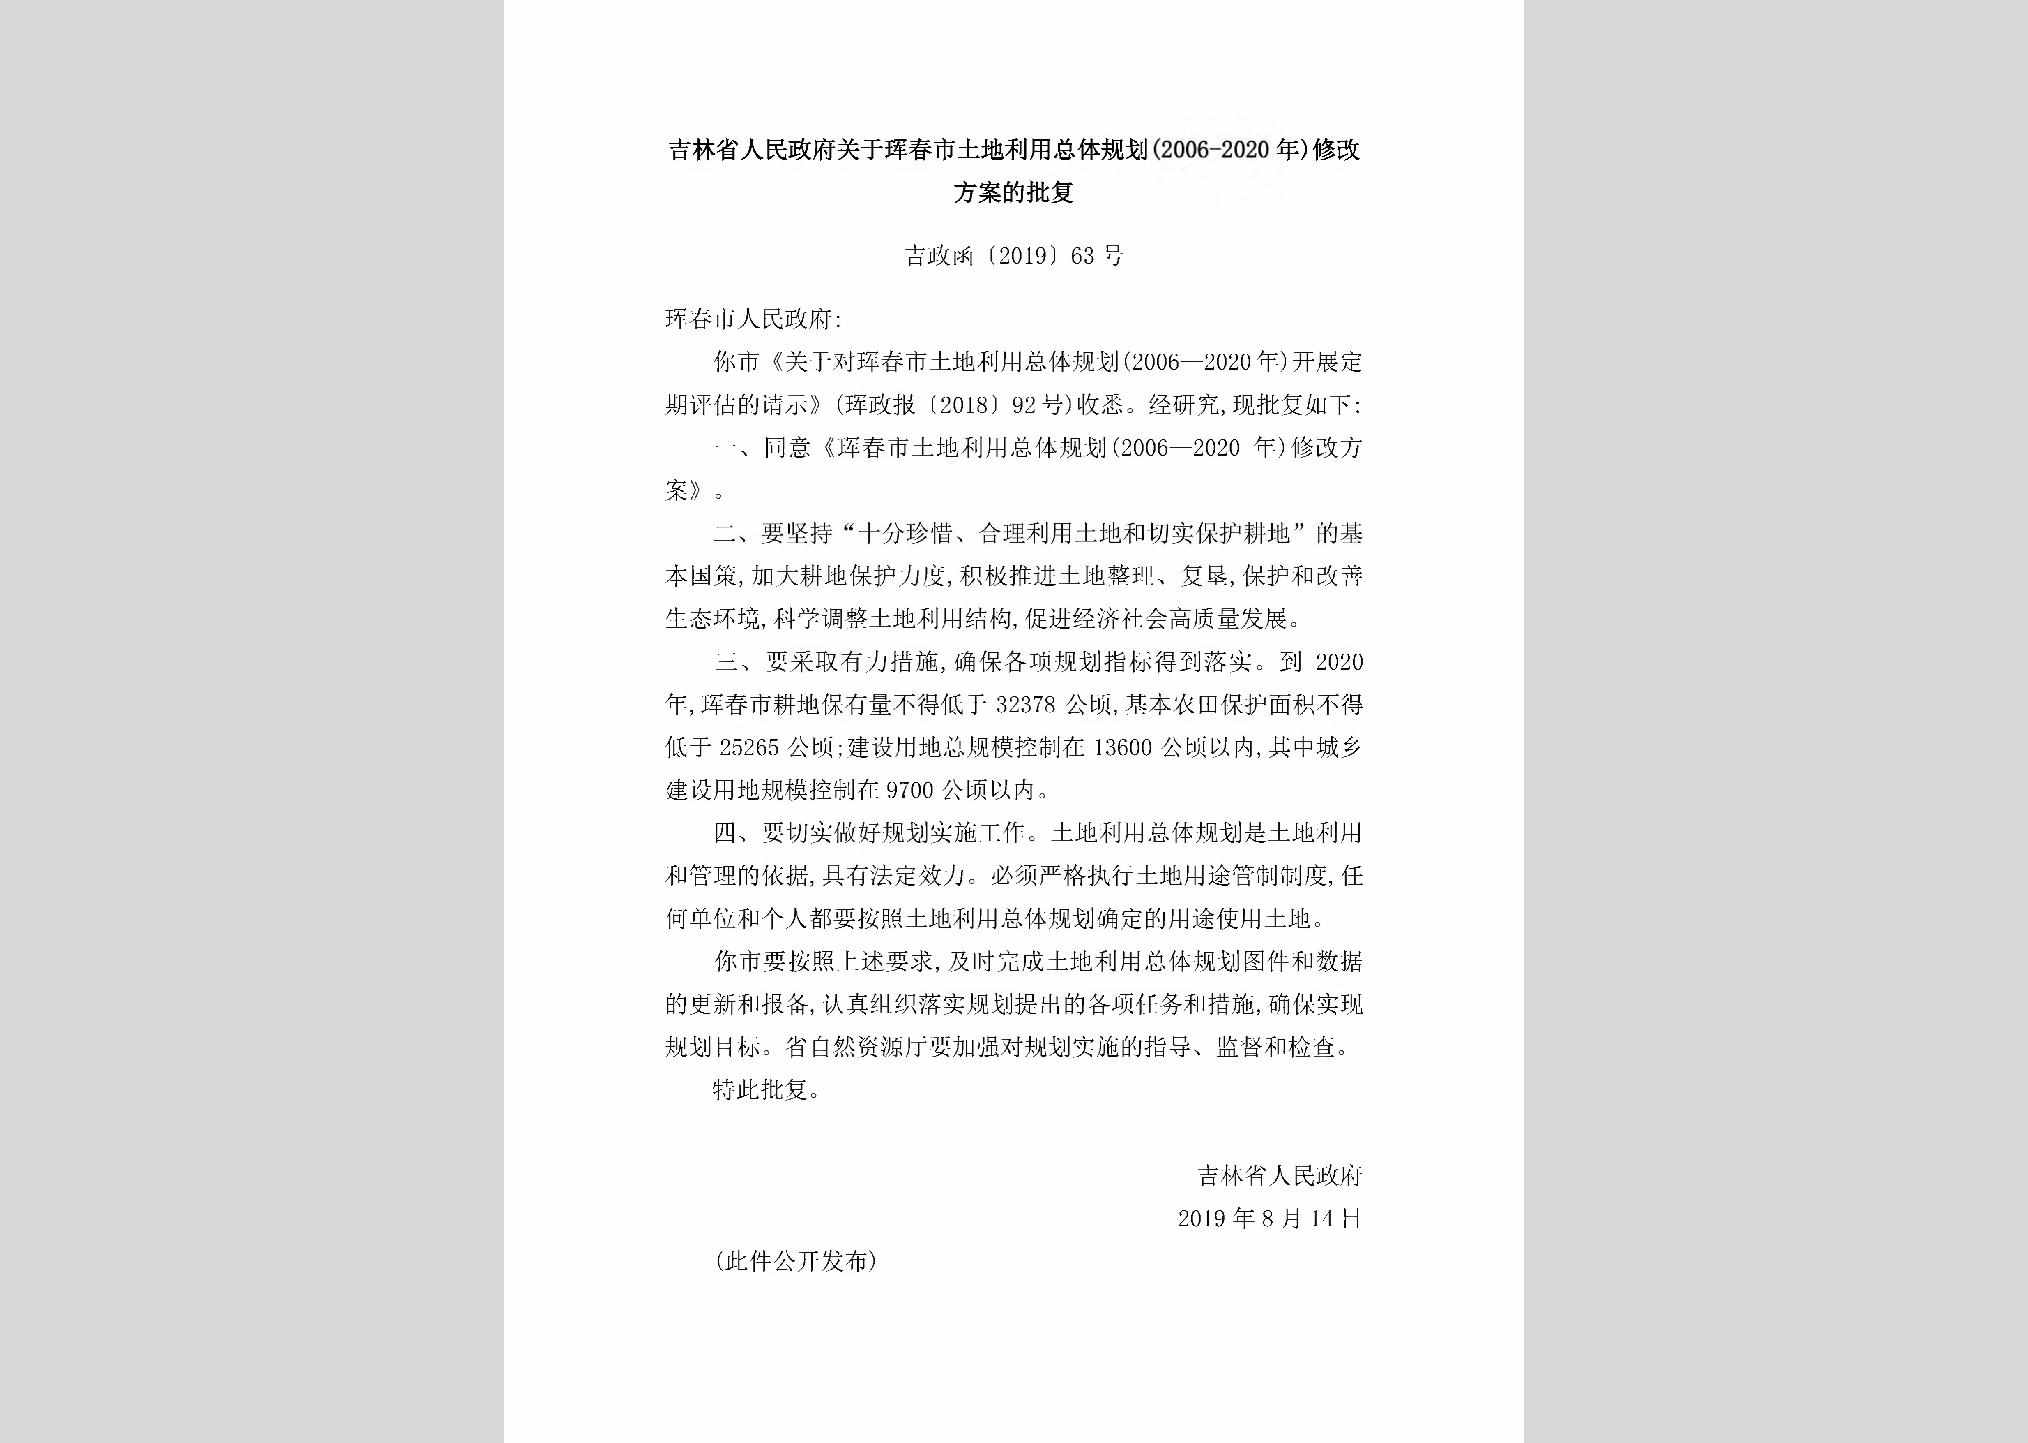 吉政函[2019]63号：吉林省人民政府关于珲春市土地利用总体规划（2006-2020年）修改方案的批复